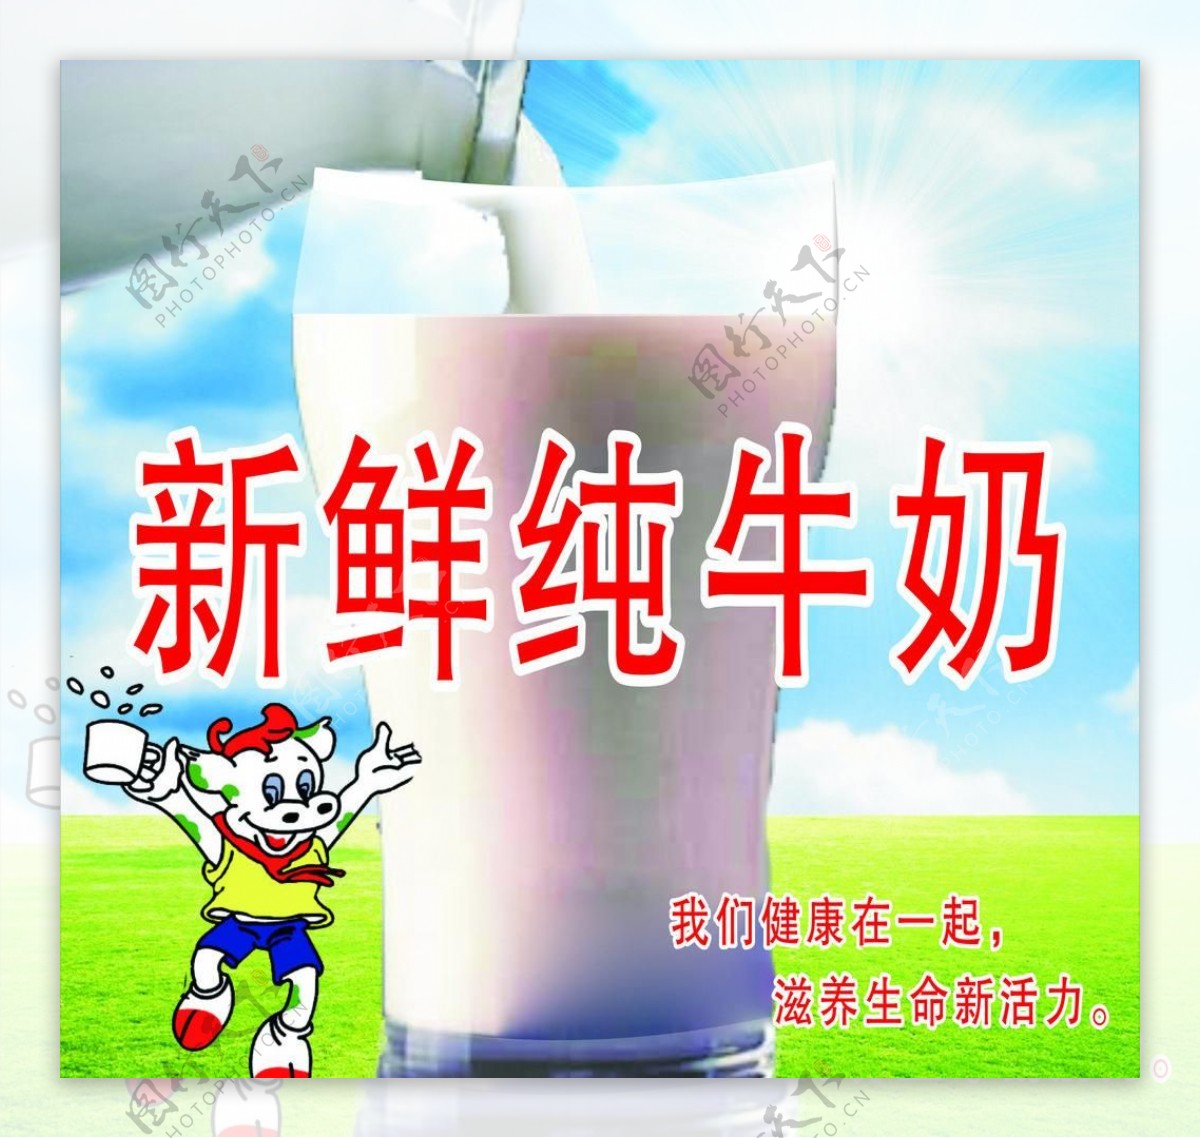 新鲜纯牛奶广告图片